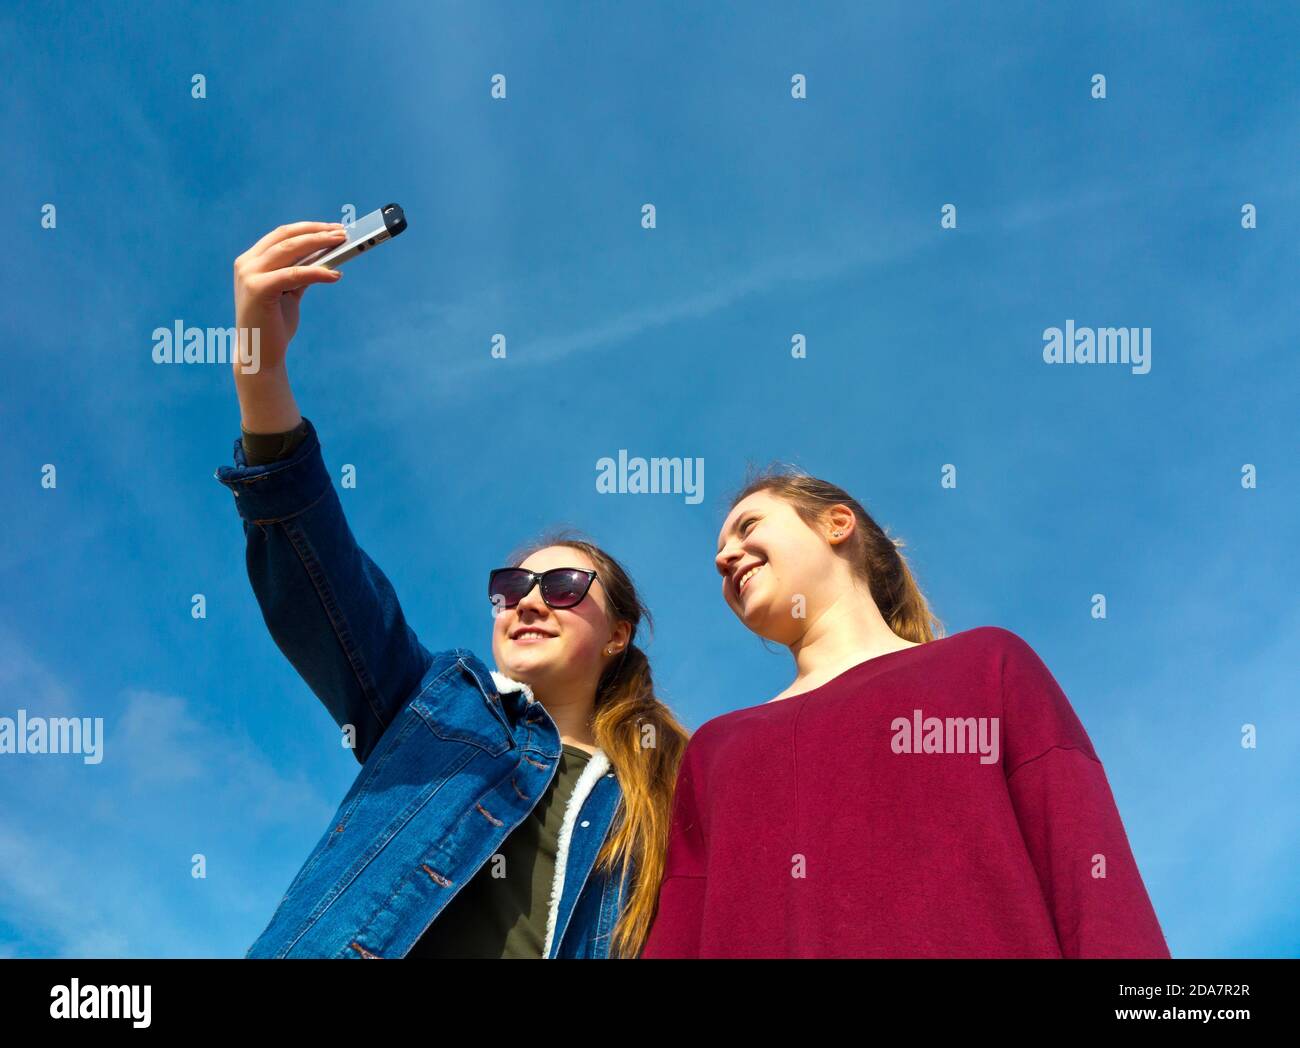 Dos chicas adolescentes que usan un teléfono móvil para tomar fotografías selfie una de la otra con el cielo azul detrás. Foto de stock